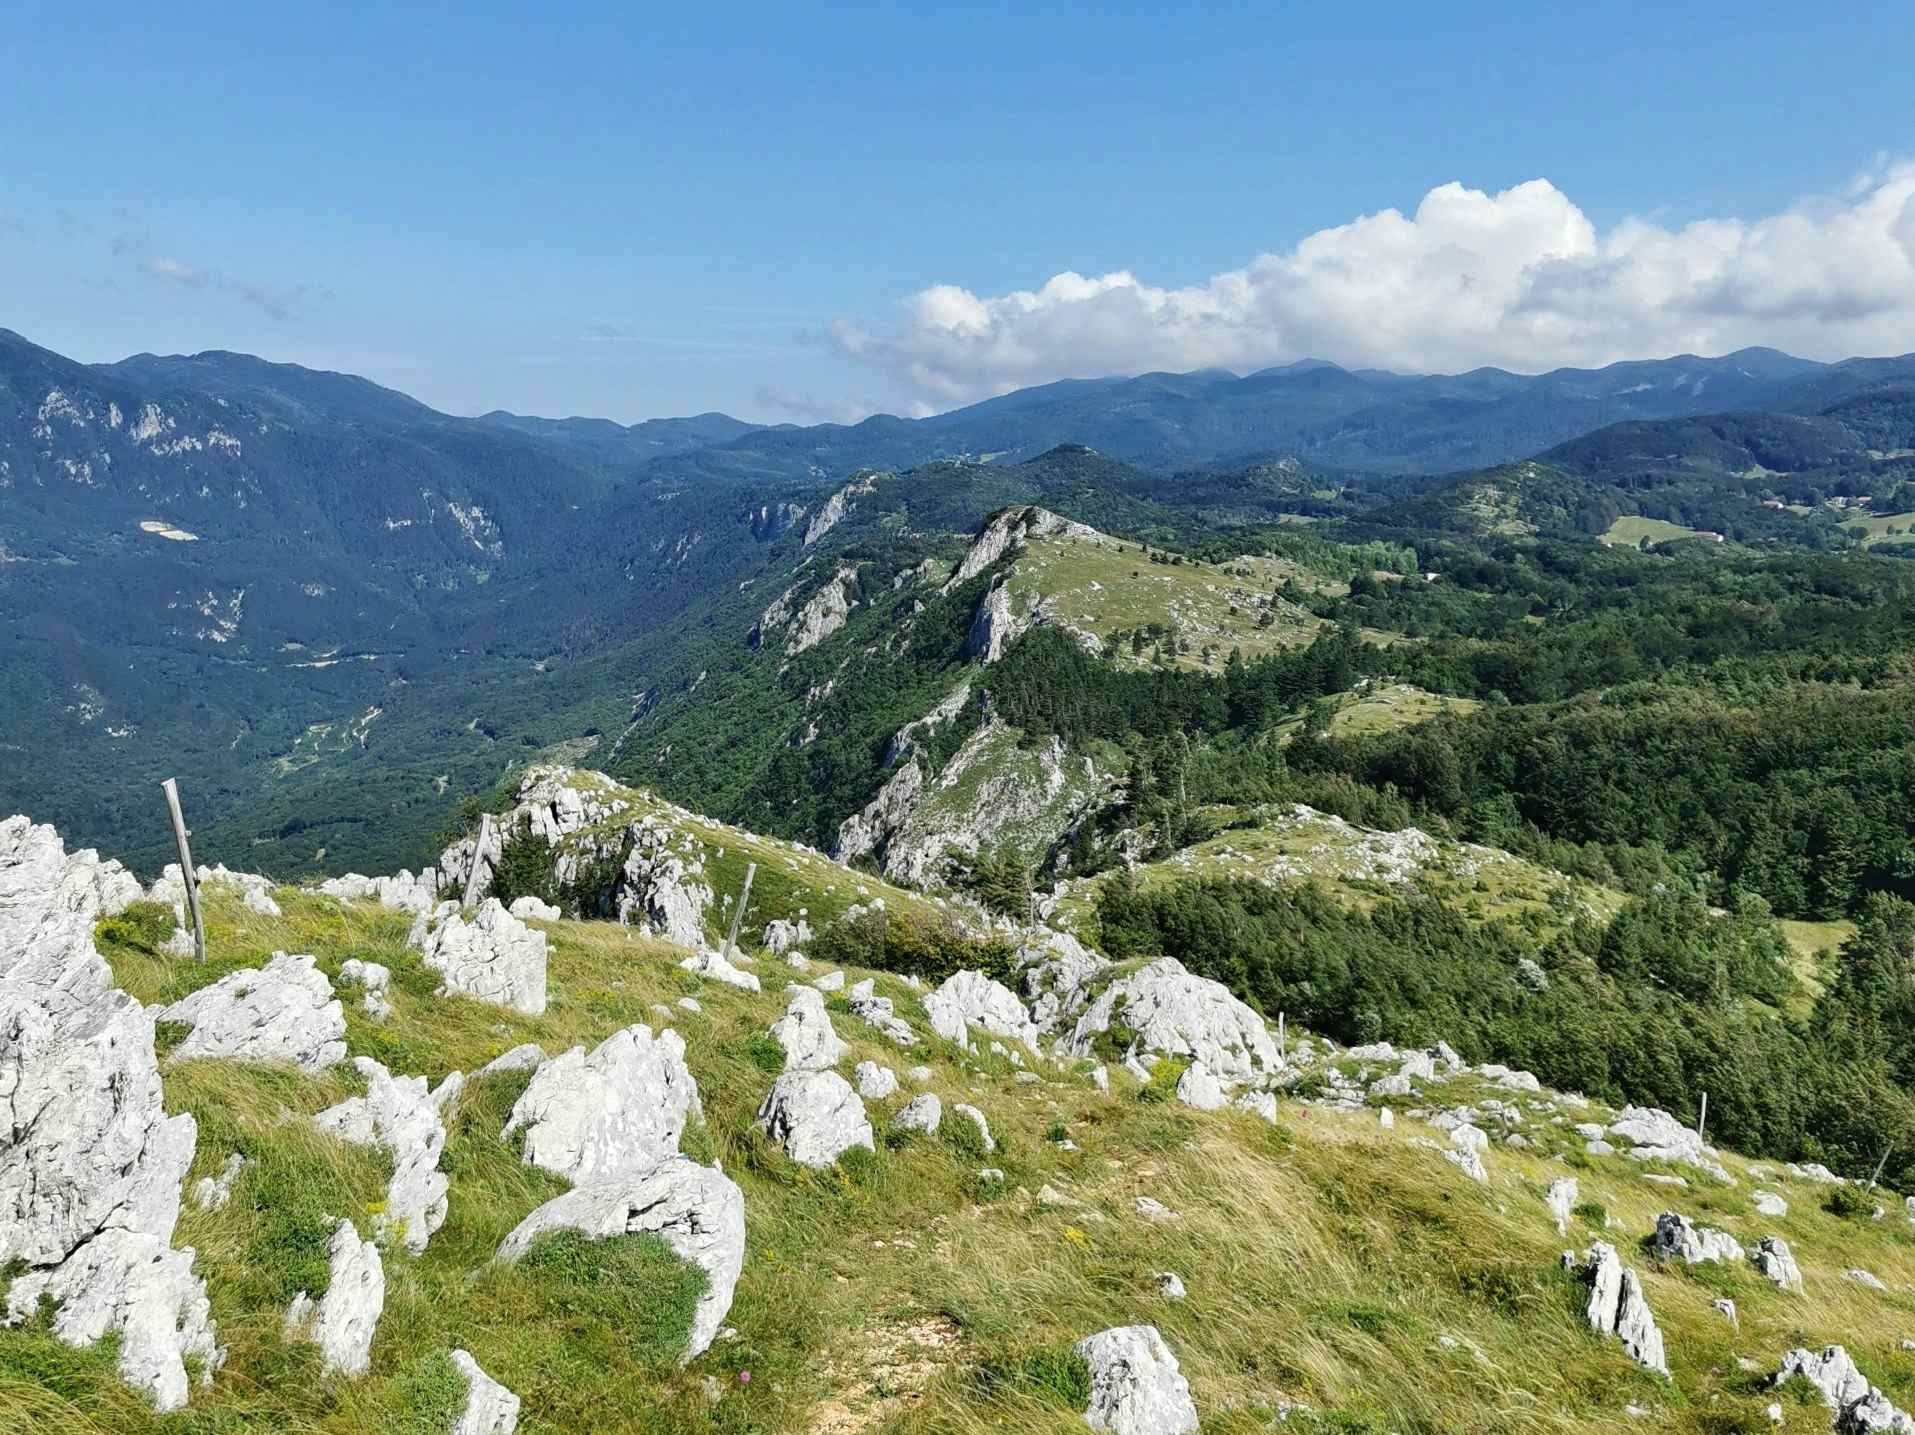 Kranjska Gora hike, Slovenia. Photo: Host/Wajdusna